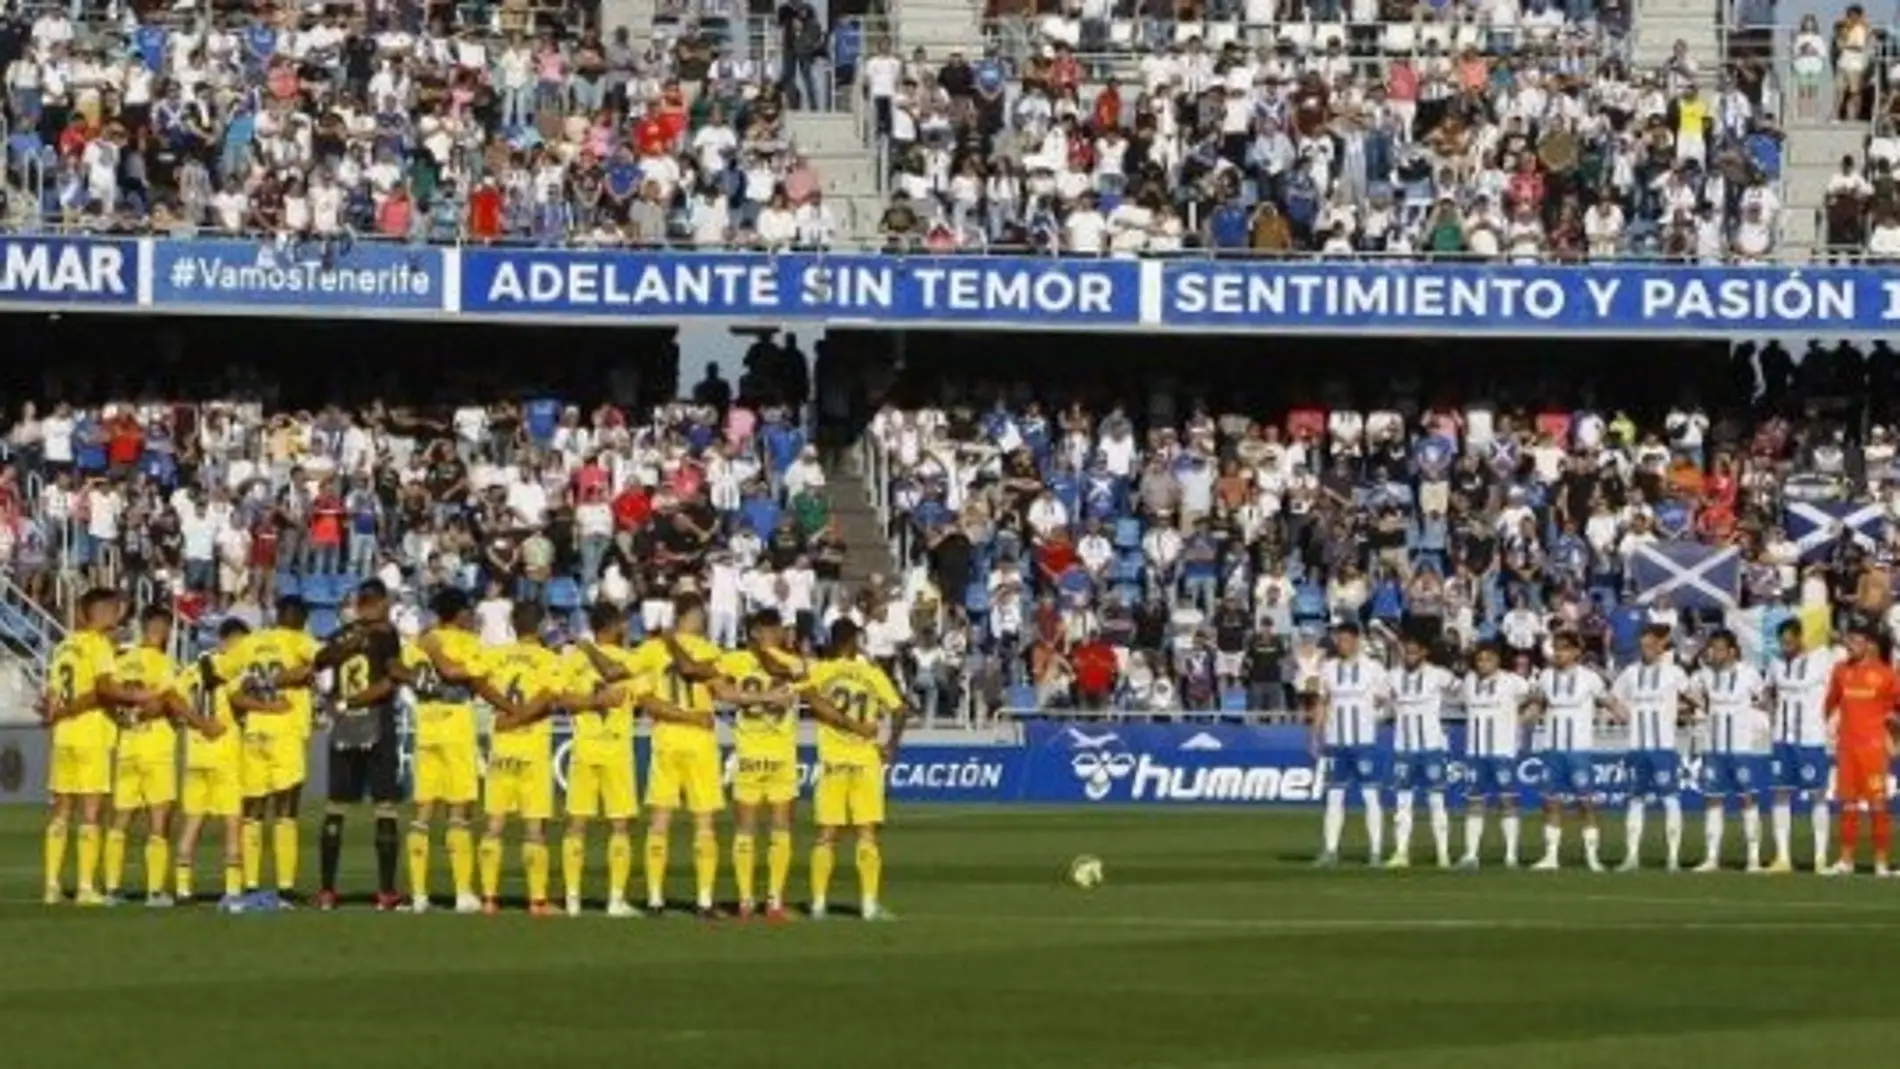 El Tenerife- Las Palmas de Copa del Rey, ya tiene precios